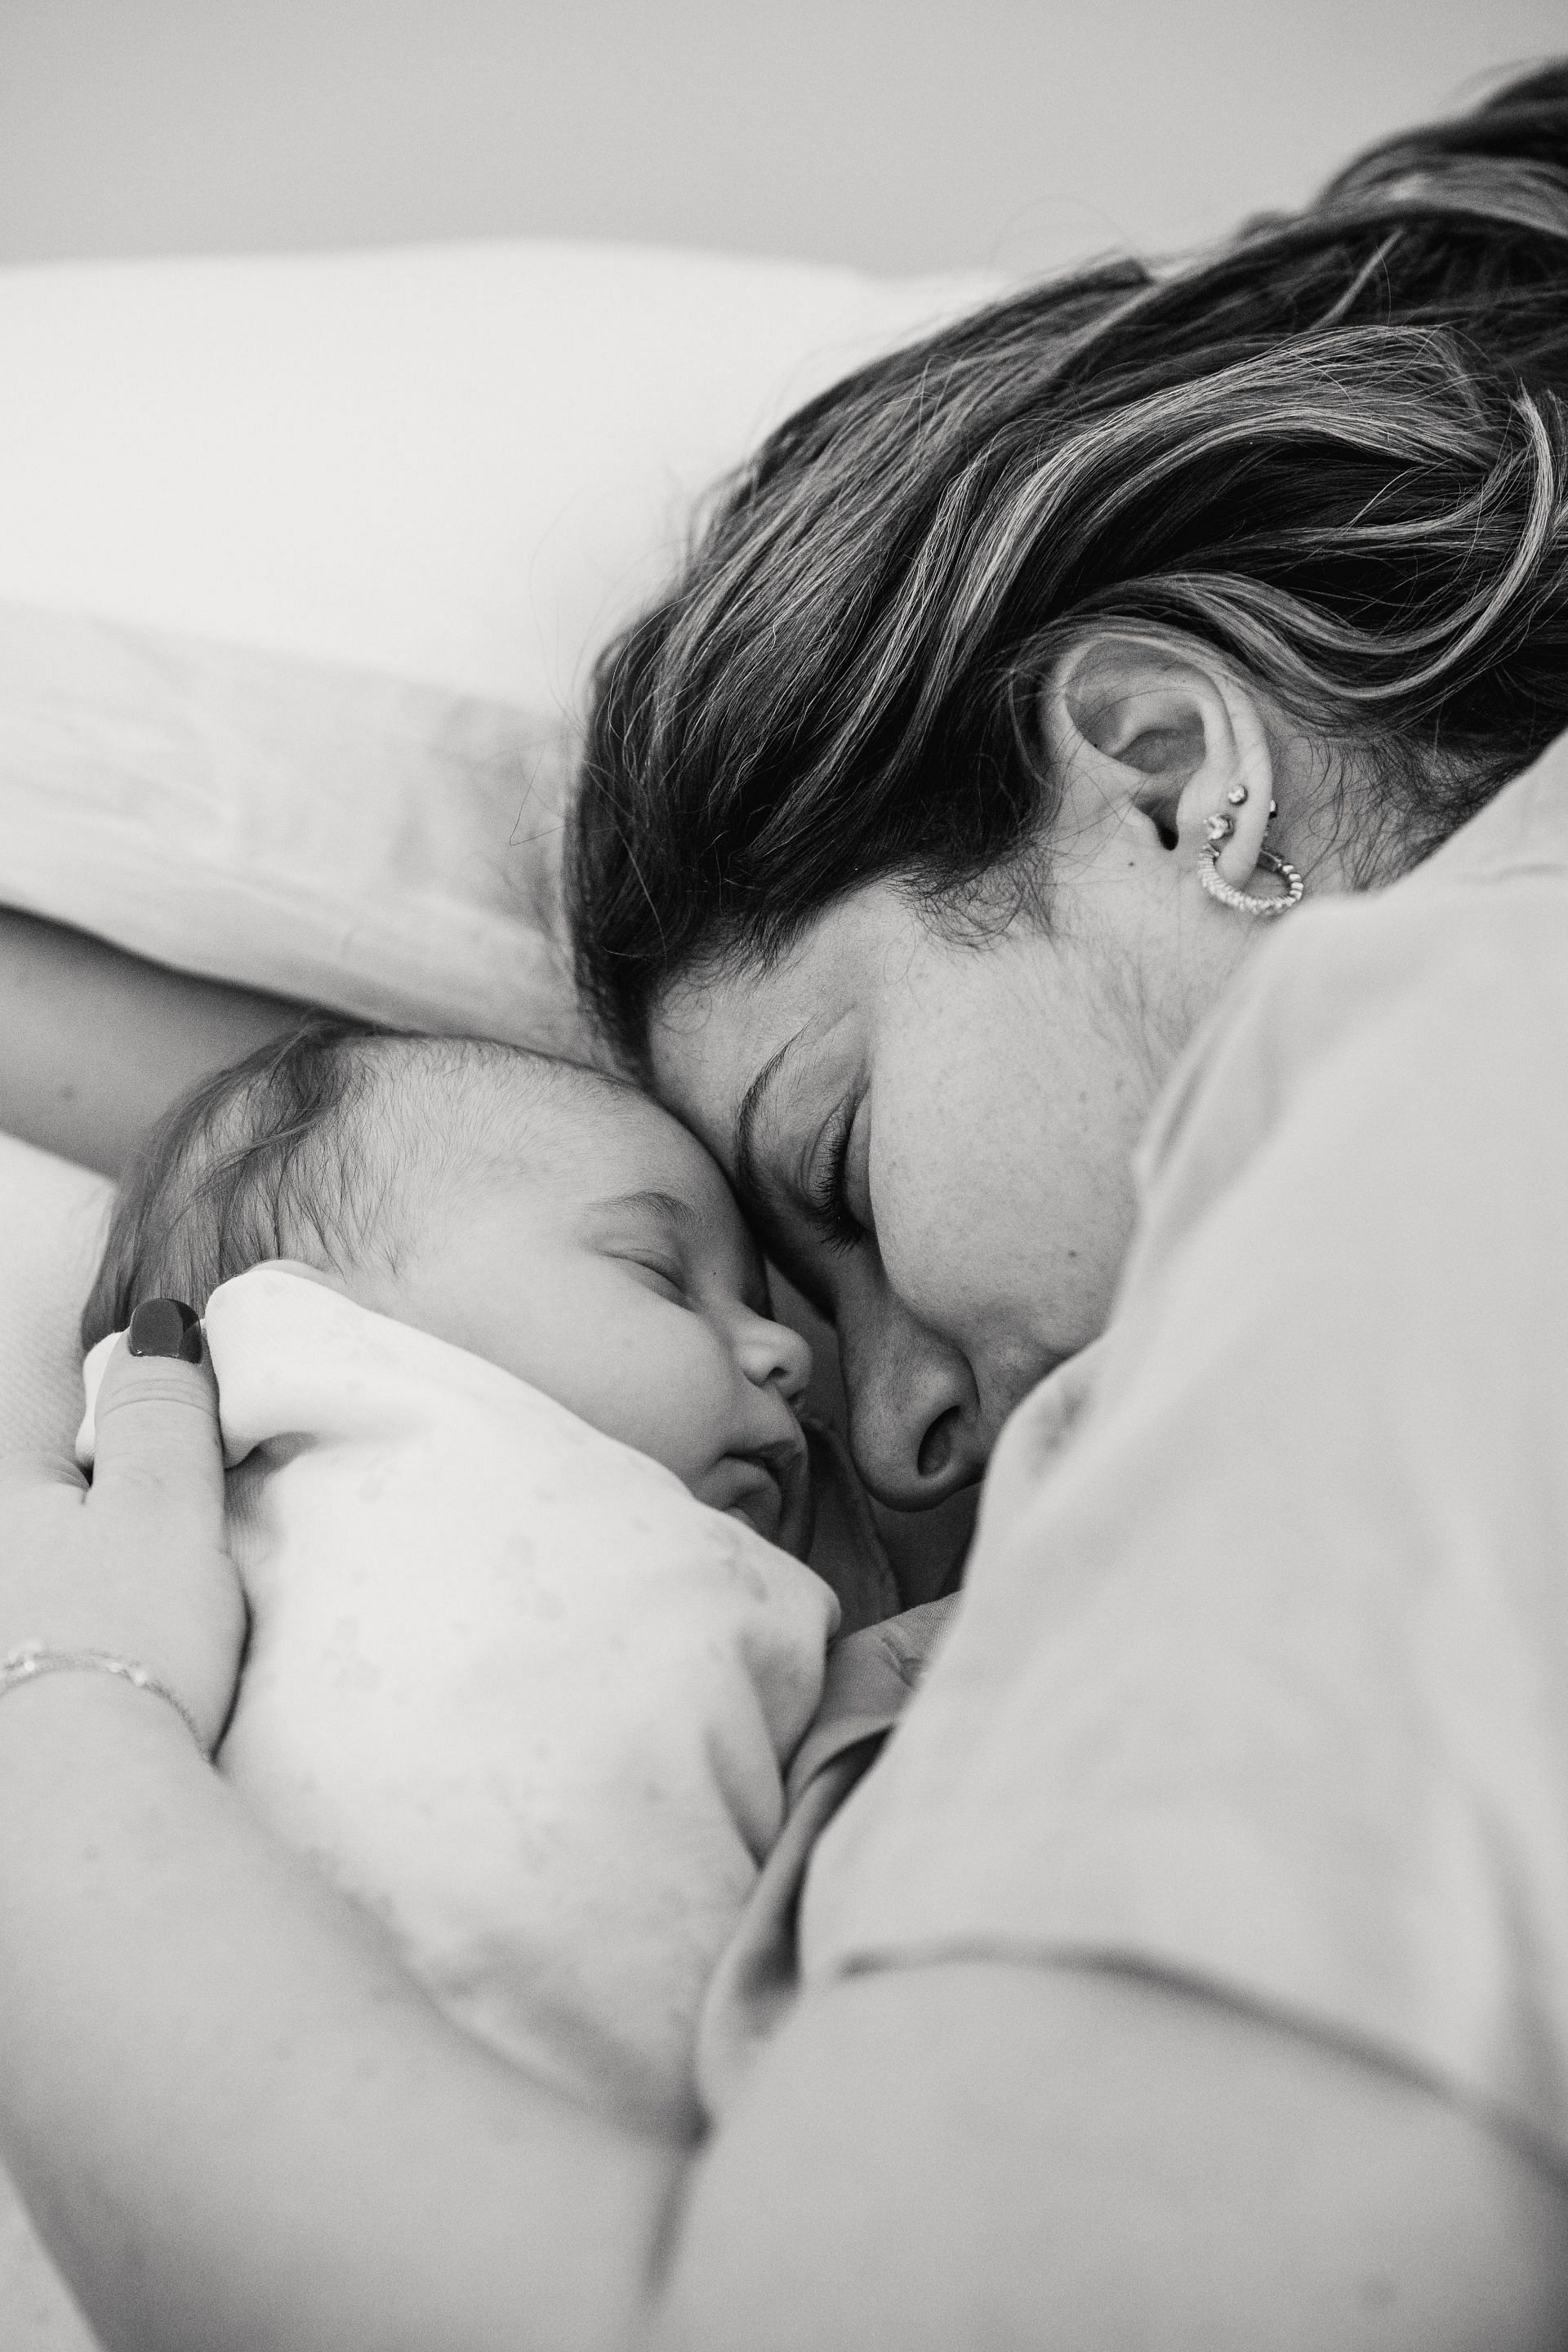 Postpartum sleep is improtant. (Image via Pexels)